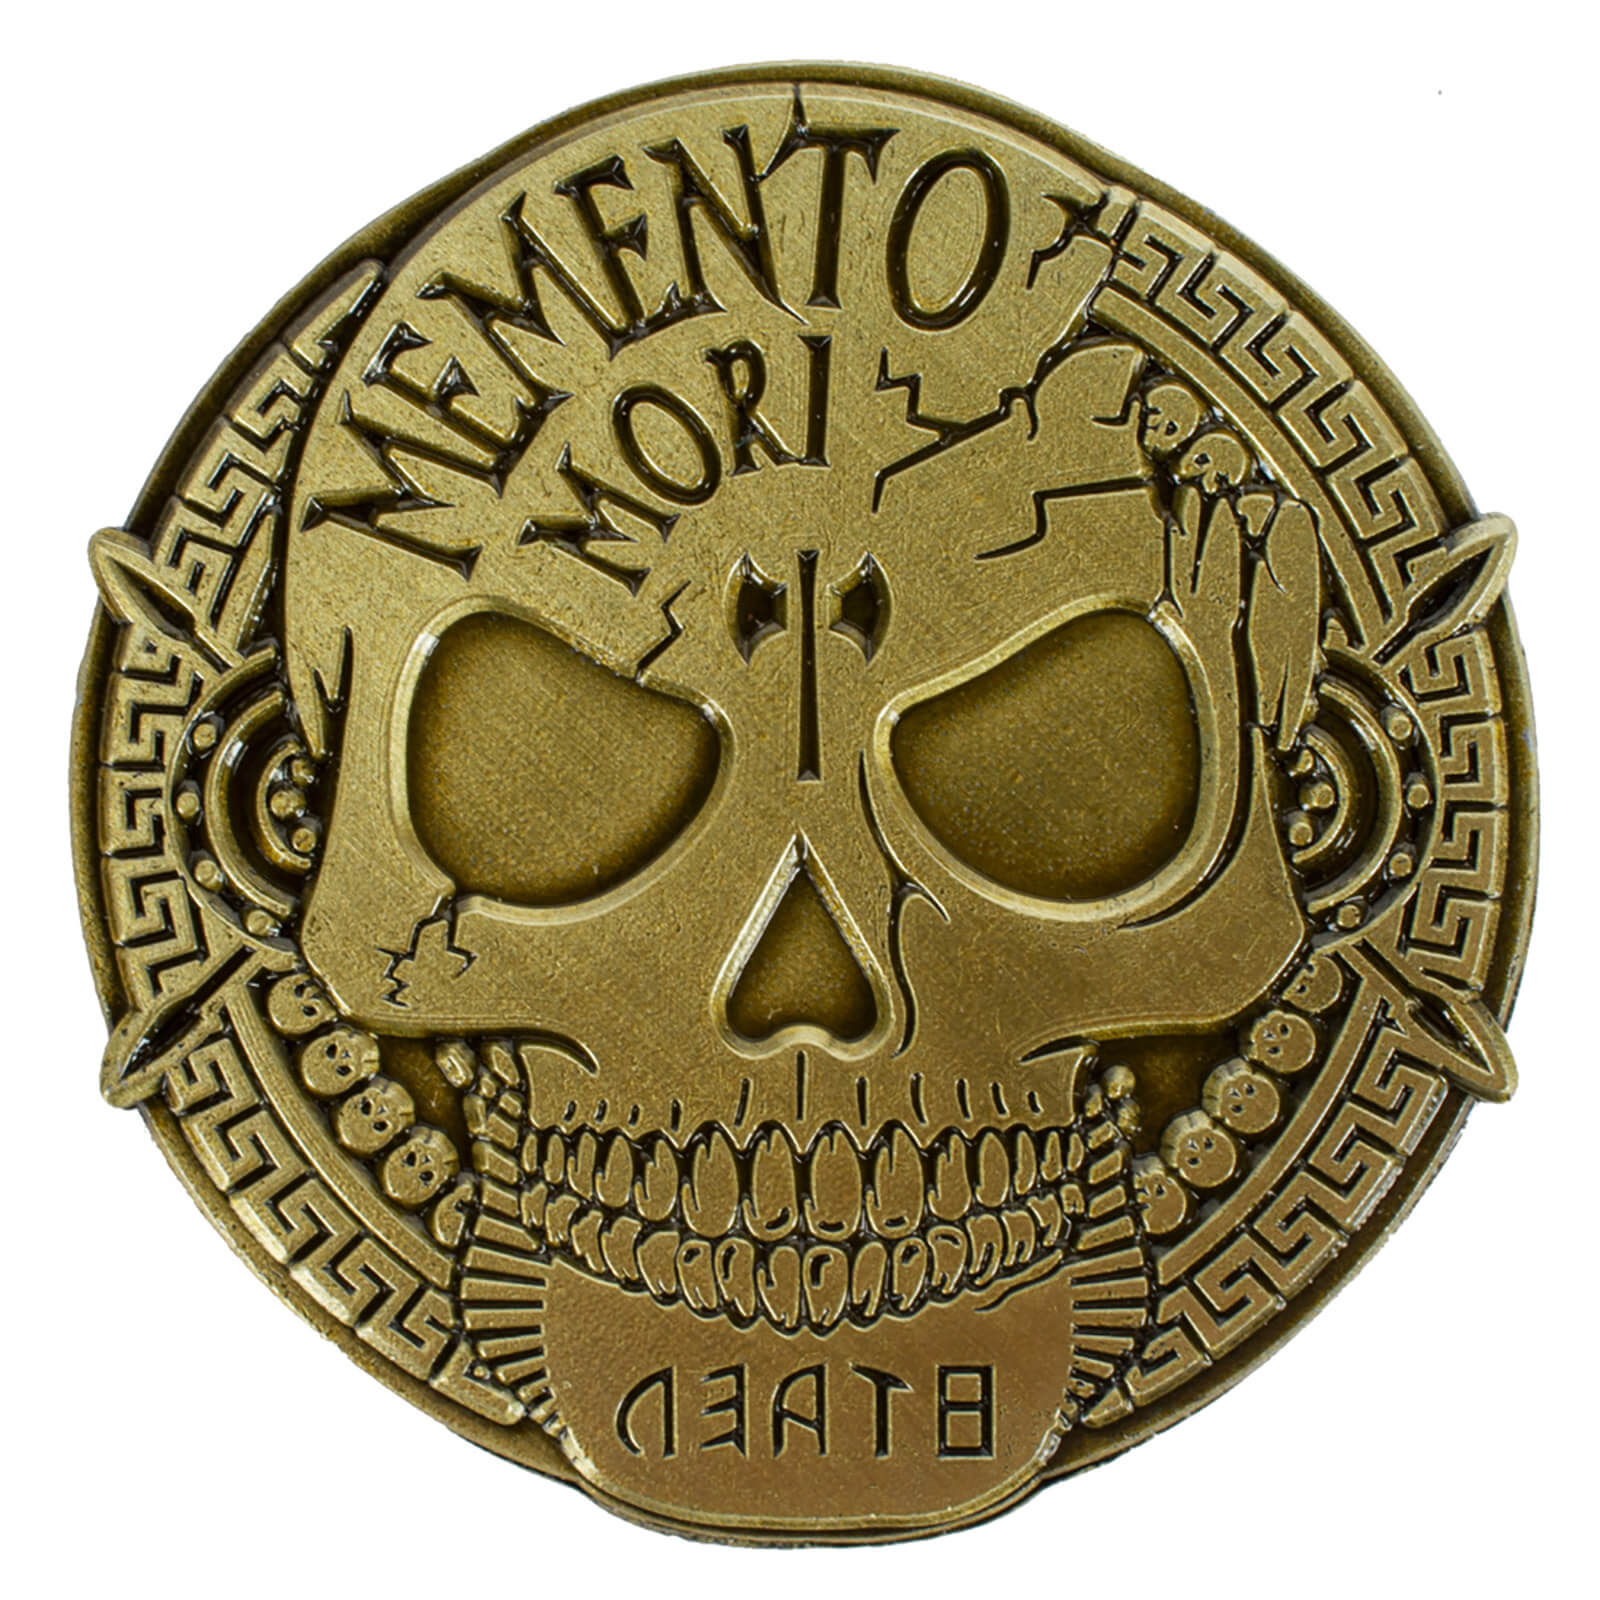 Image of Memento Mori Coin